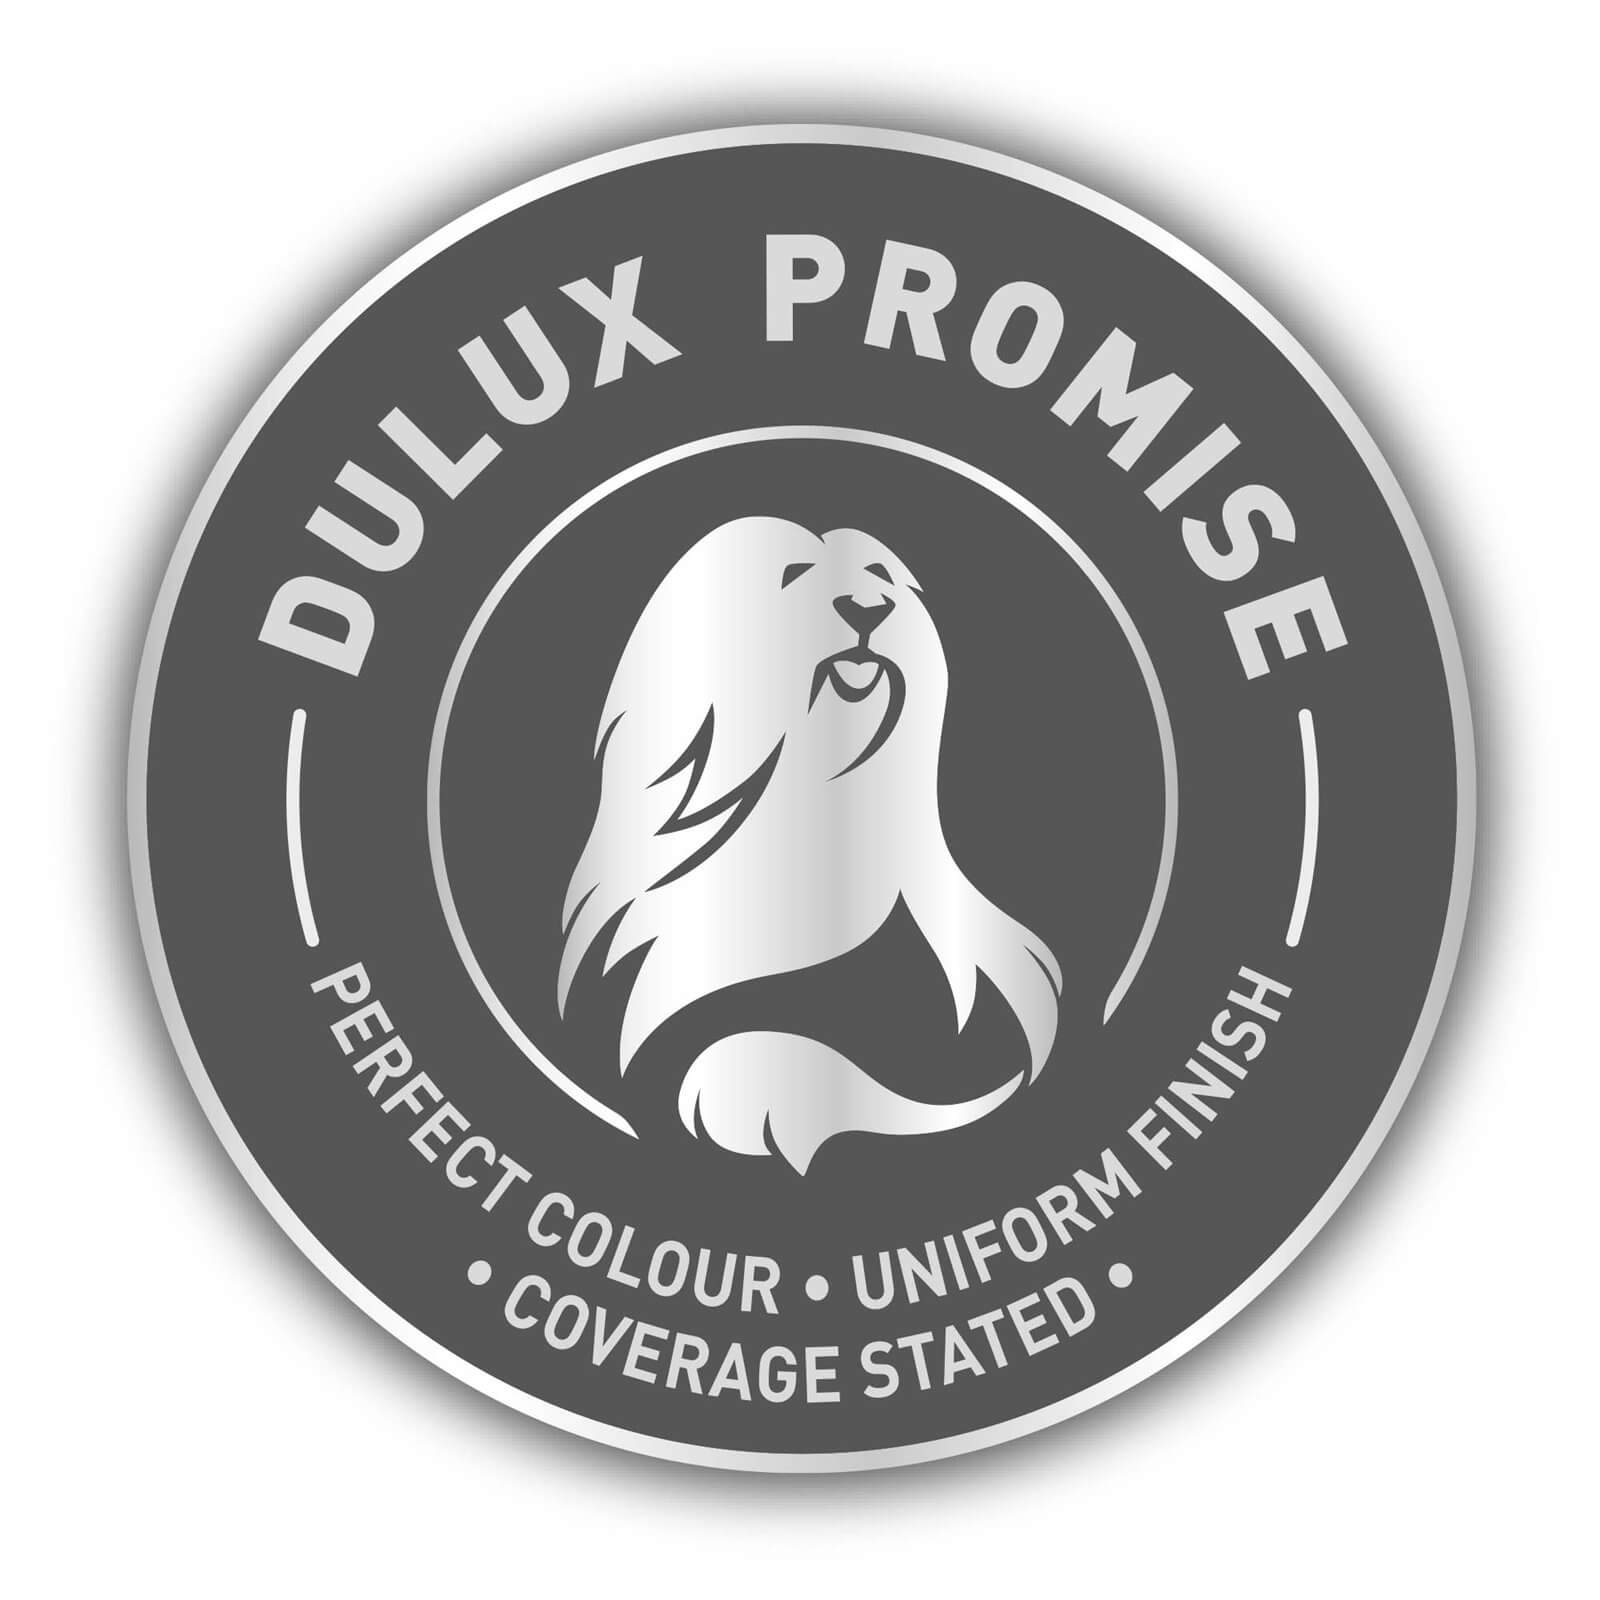 Dulux Matt Emulsion Paint Goose Down - 5L